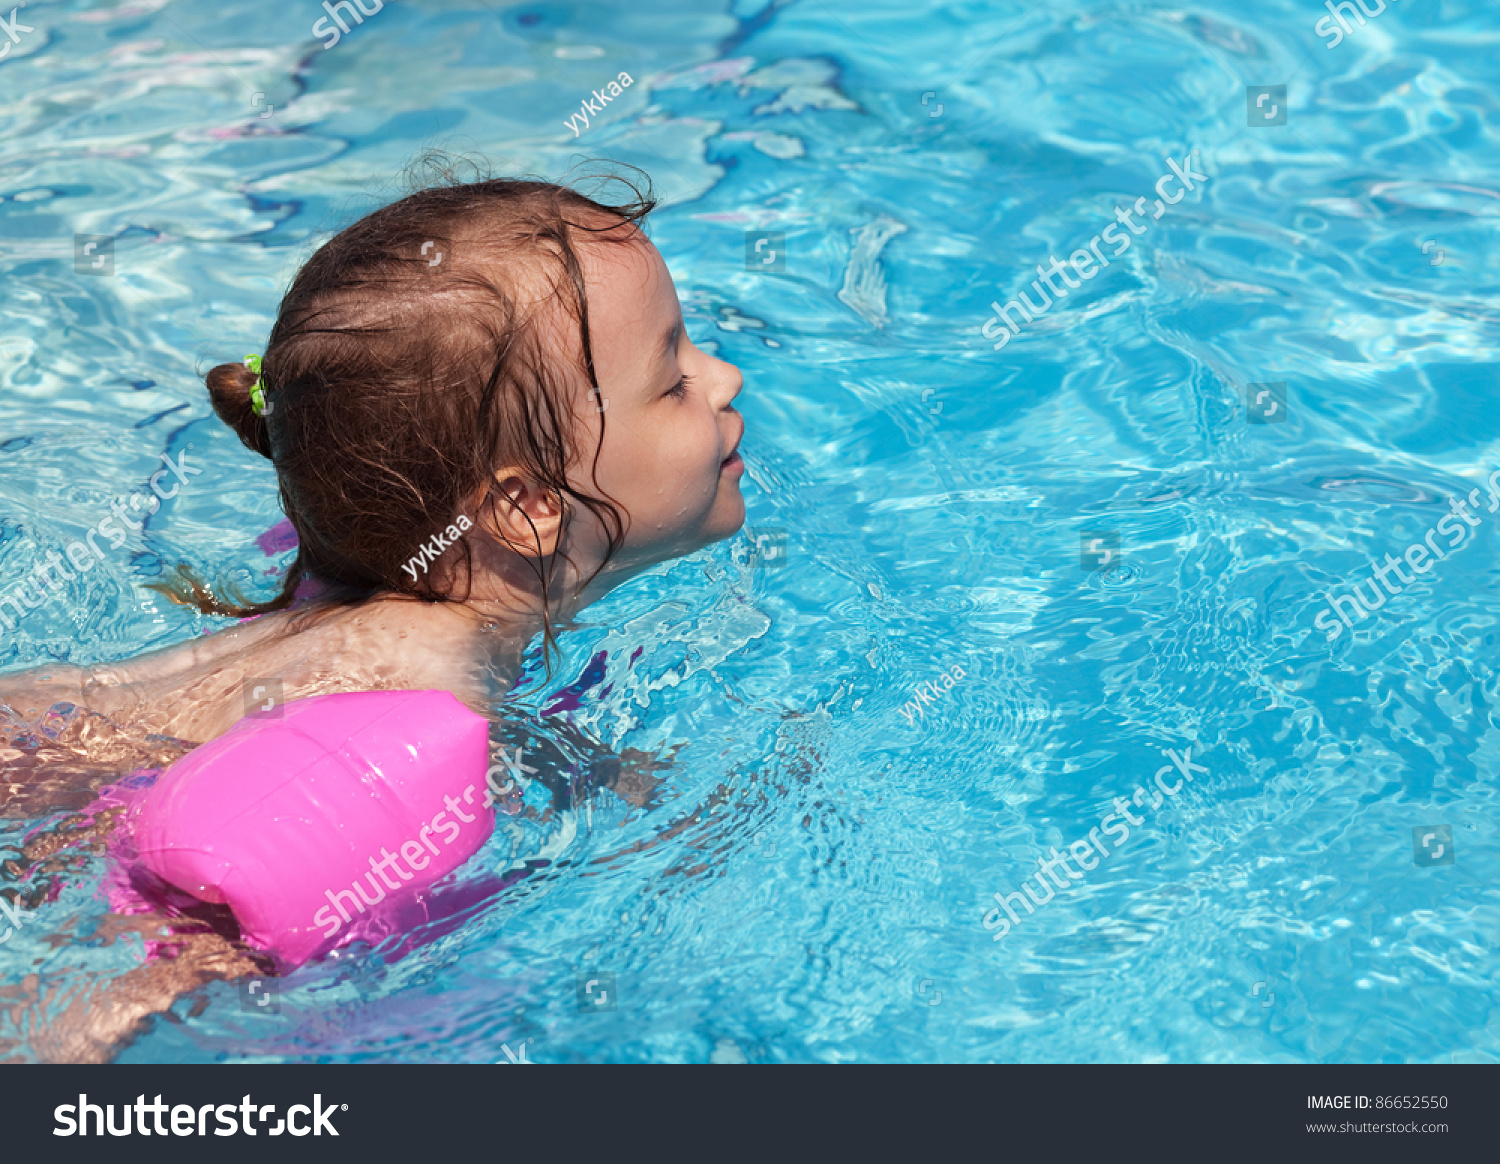 Маленькие купается бассейне. Девочки в бассейне. Девочка купается в бассейне. Маленькая девочка плавает в бассейне. Дети купаются в бассейне.